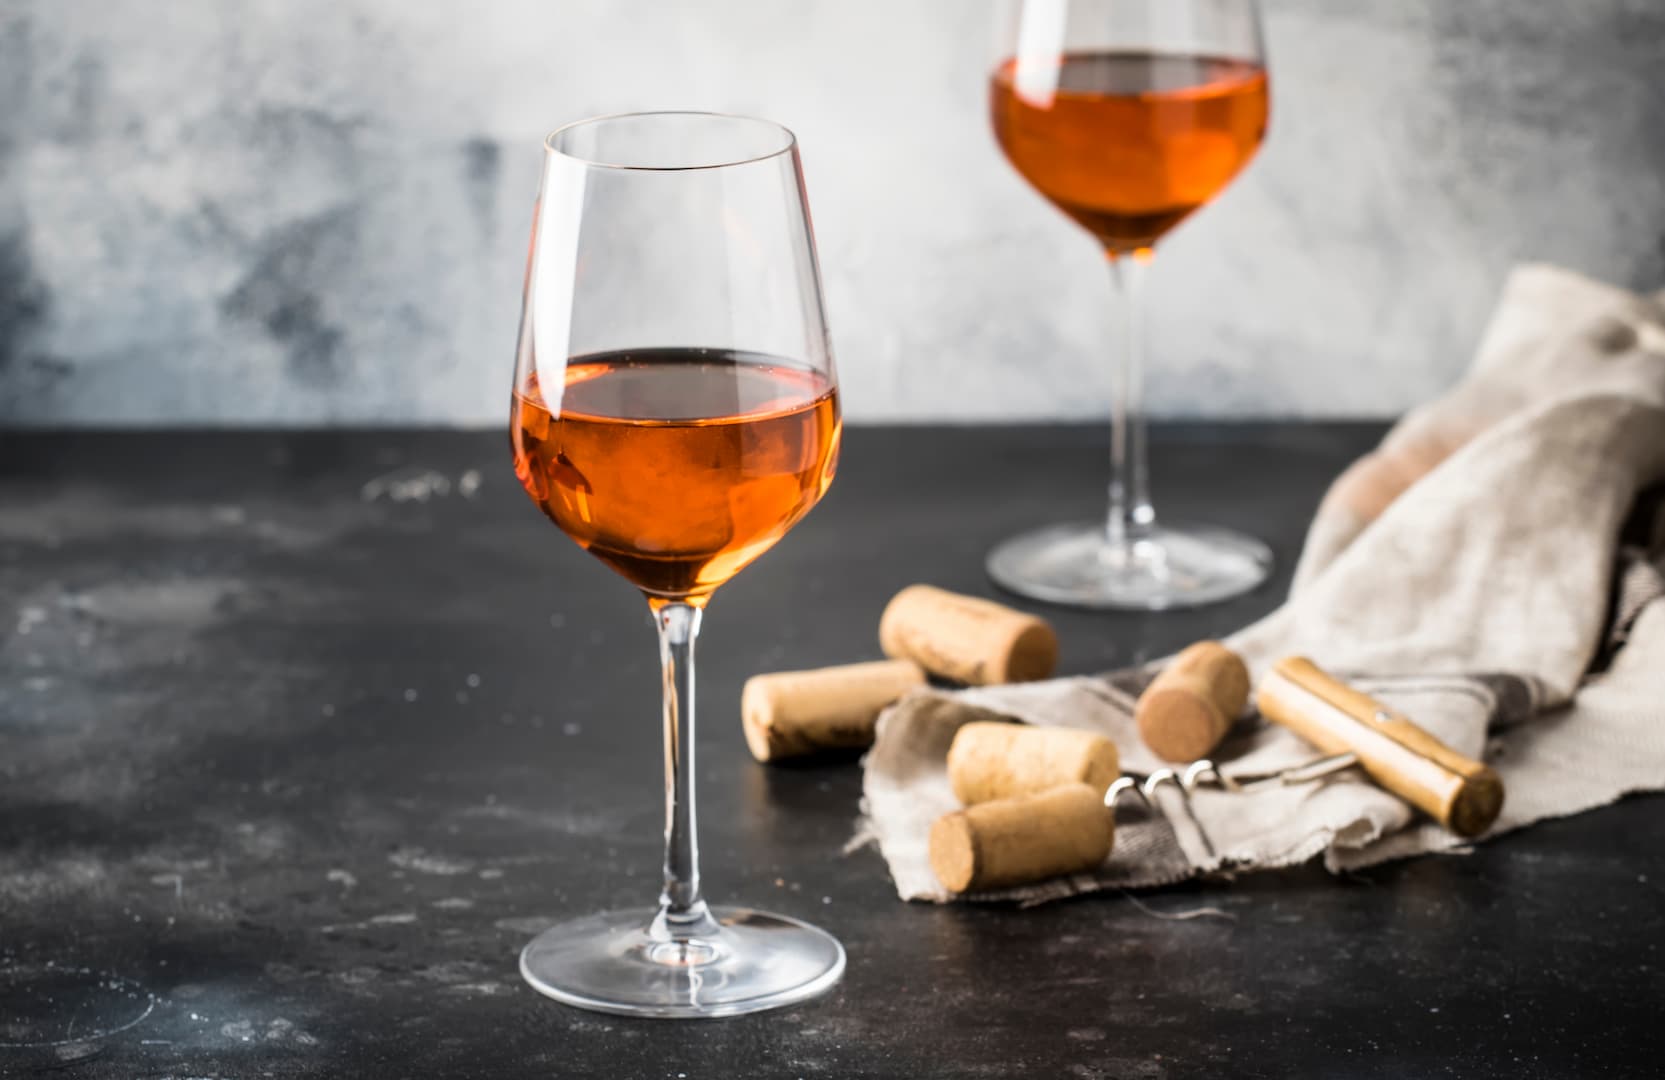 Bedste orangevin - hvad er Orangevin